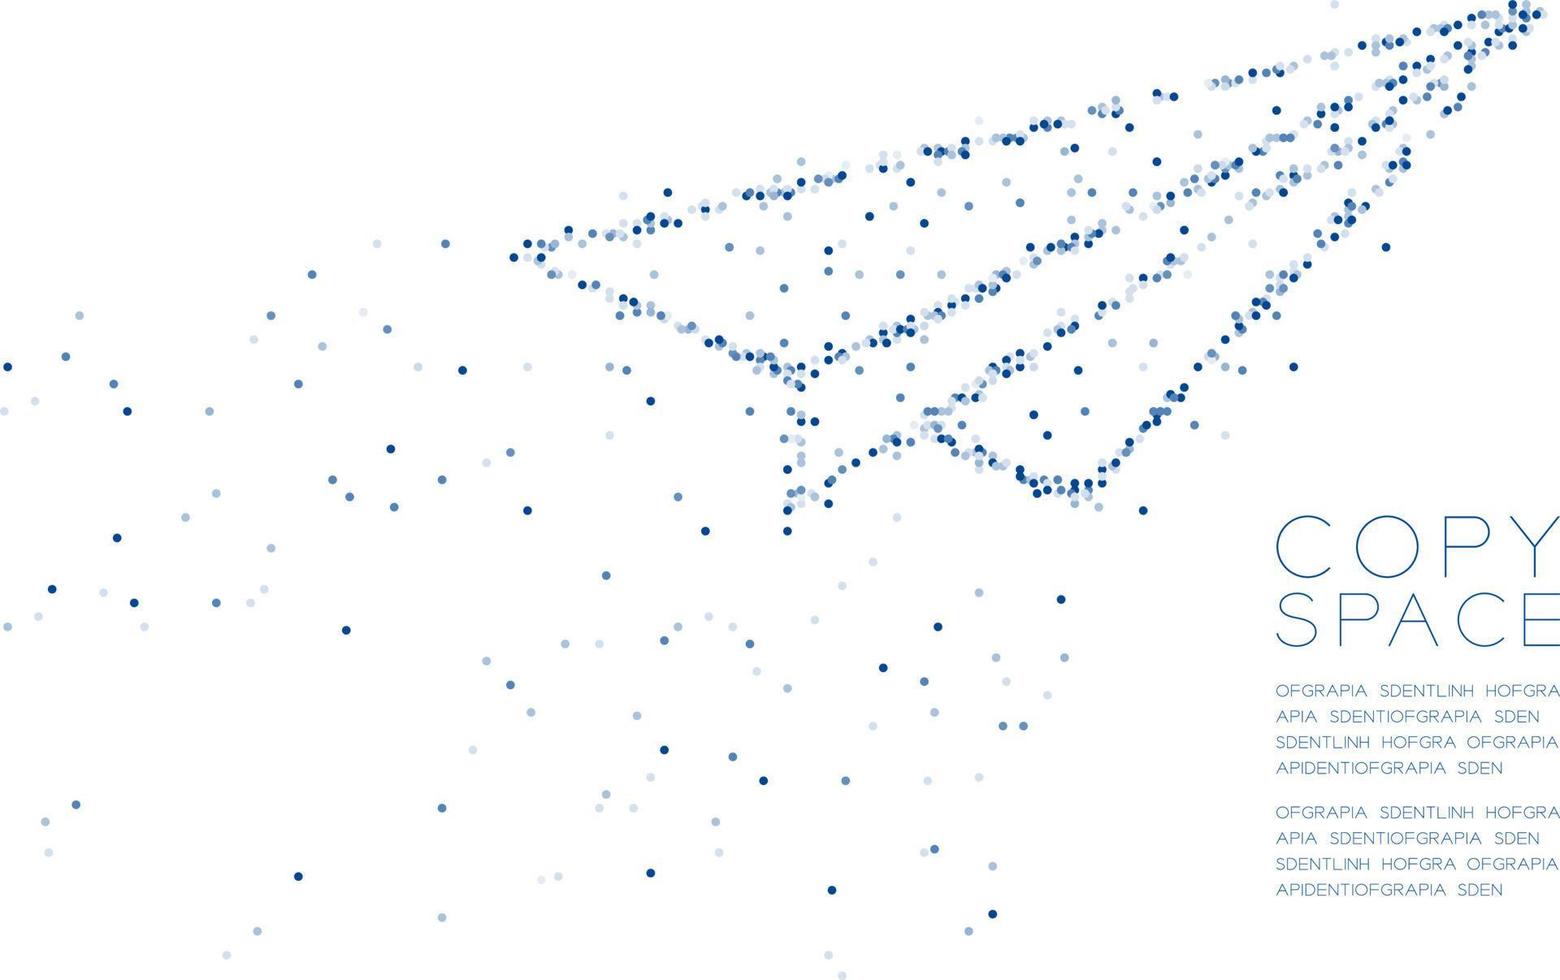 abstrakter geometrischer Kreis Punkt Molekül Partikel Muster Papier Flugzeug Form, vr Technologie Business Vision Konzept Design blaue Farbe Abbildung isoliert auf weißem Hintergrund mit Kopie Raum, Vektor eps